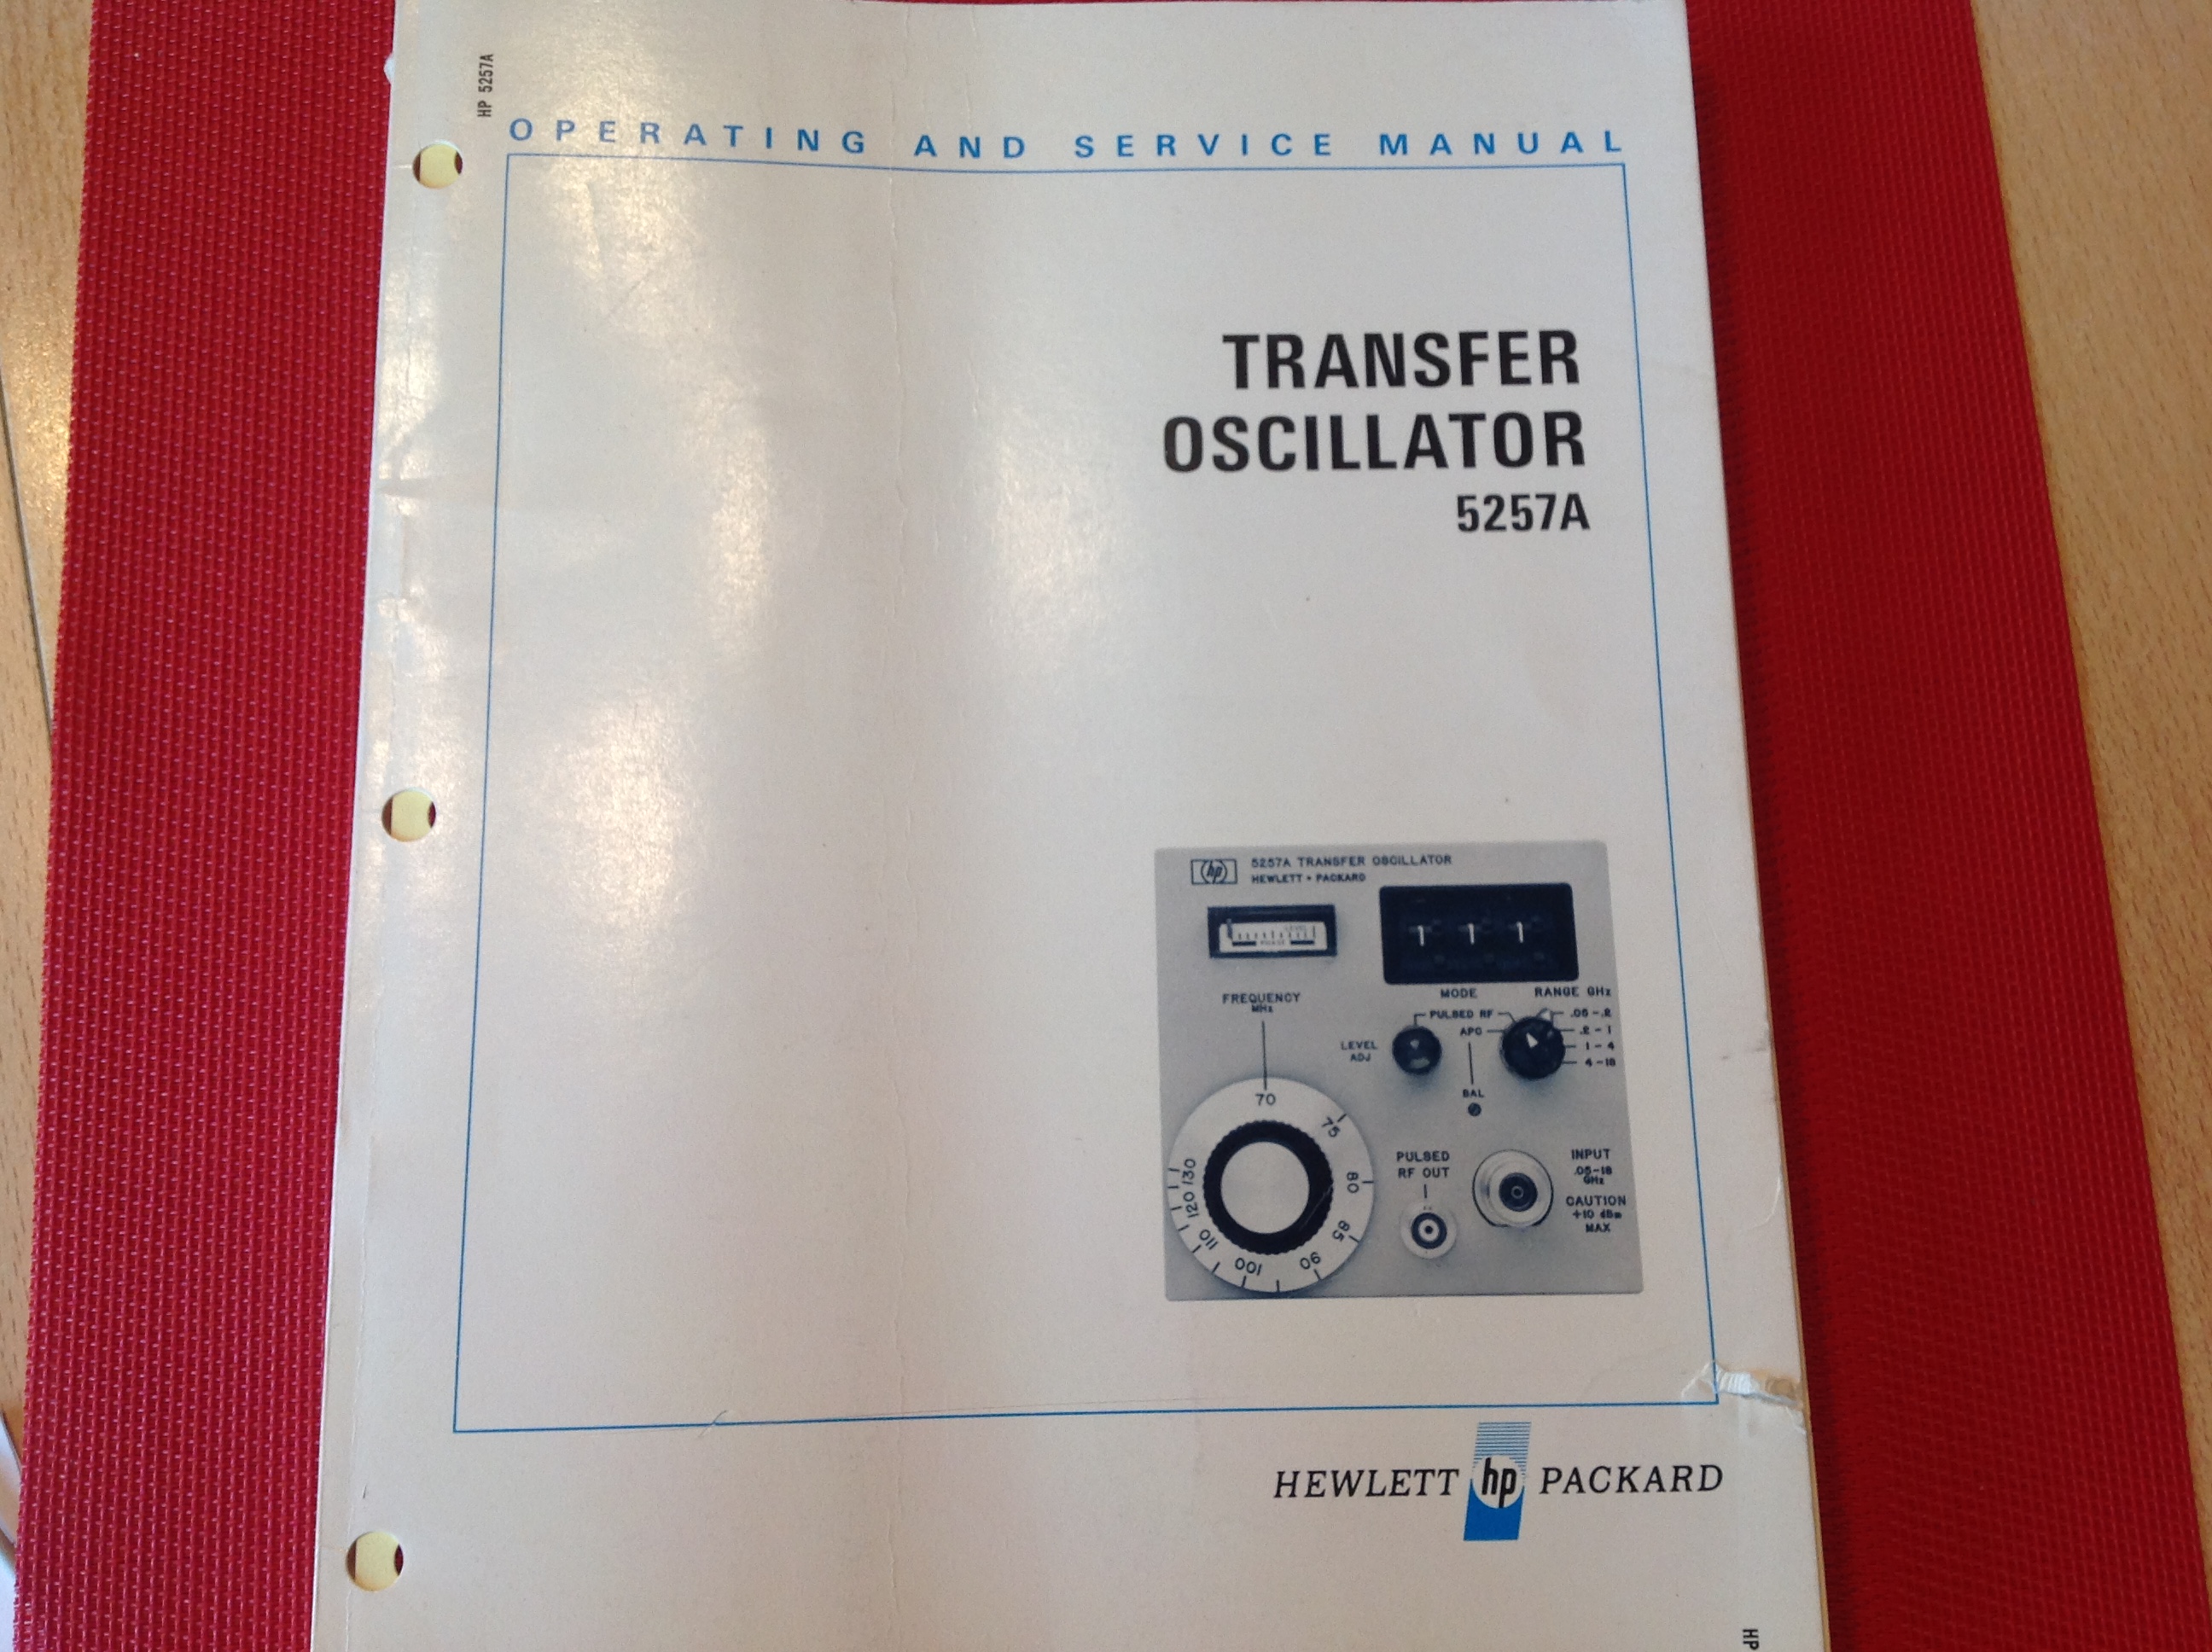 Hewlett Packard Transfer Oscillator 5257 A